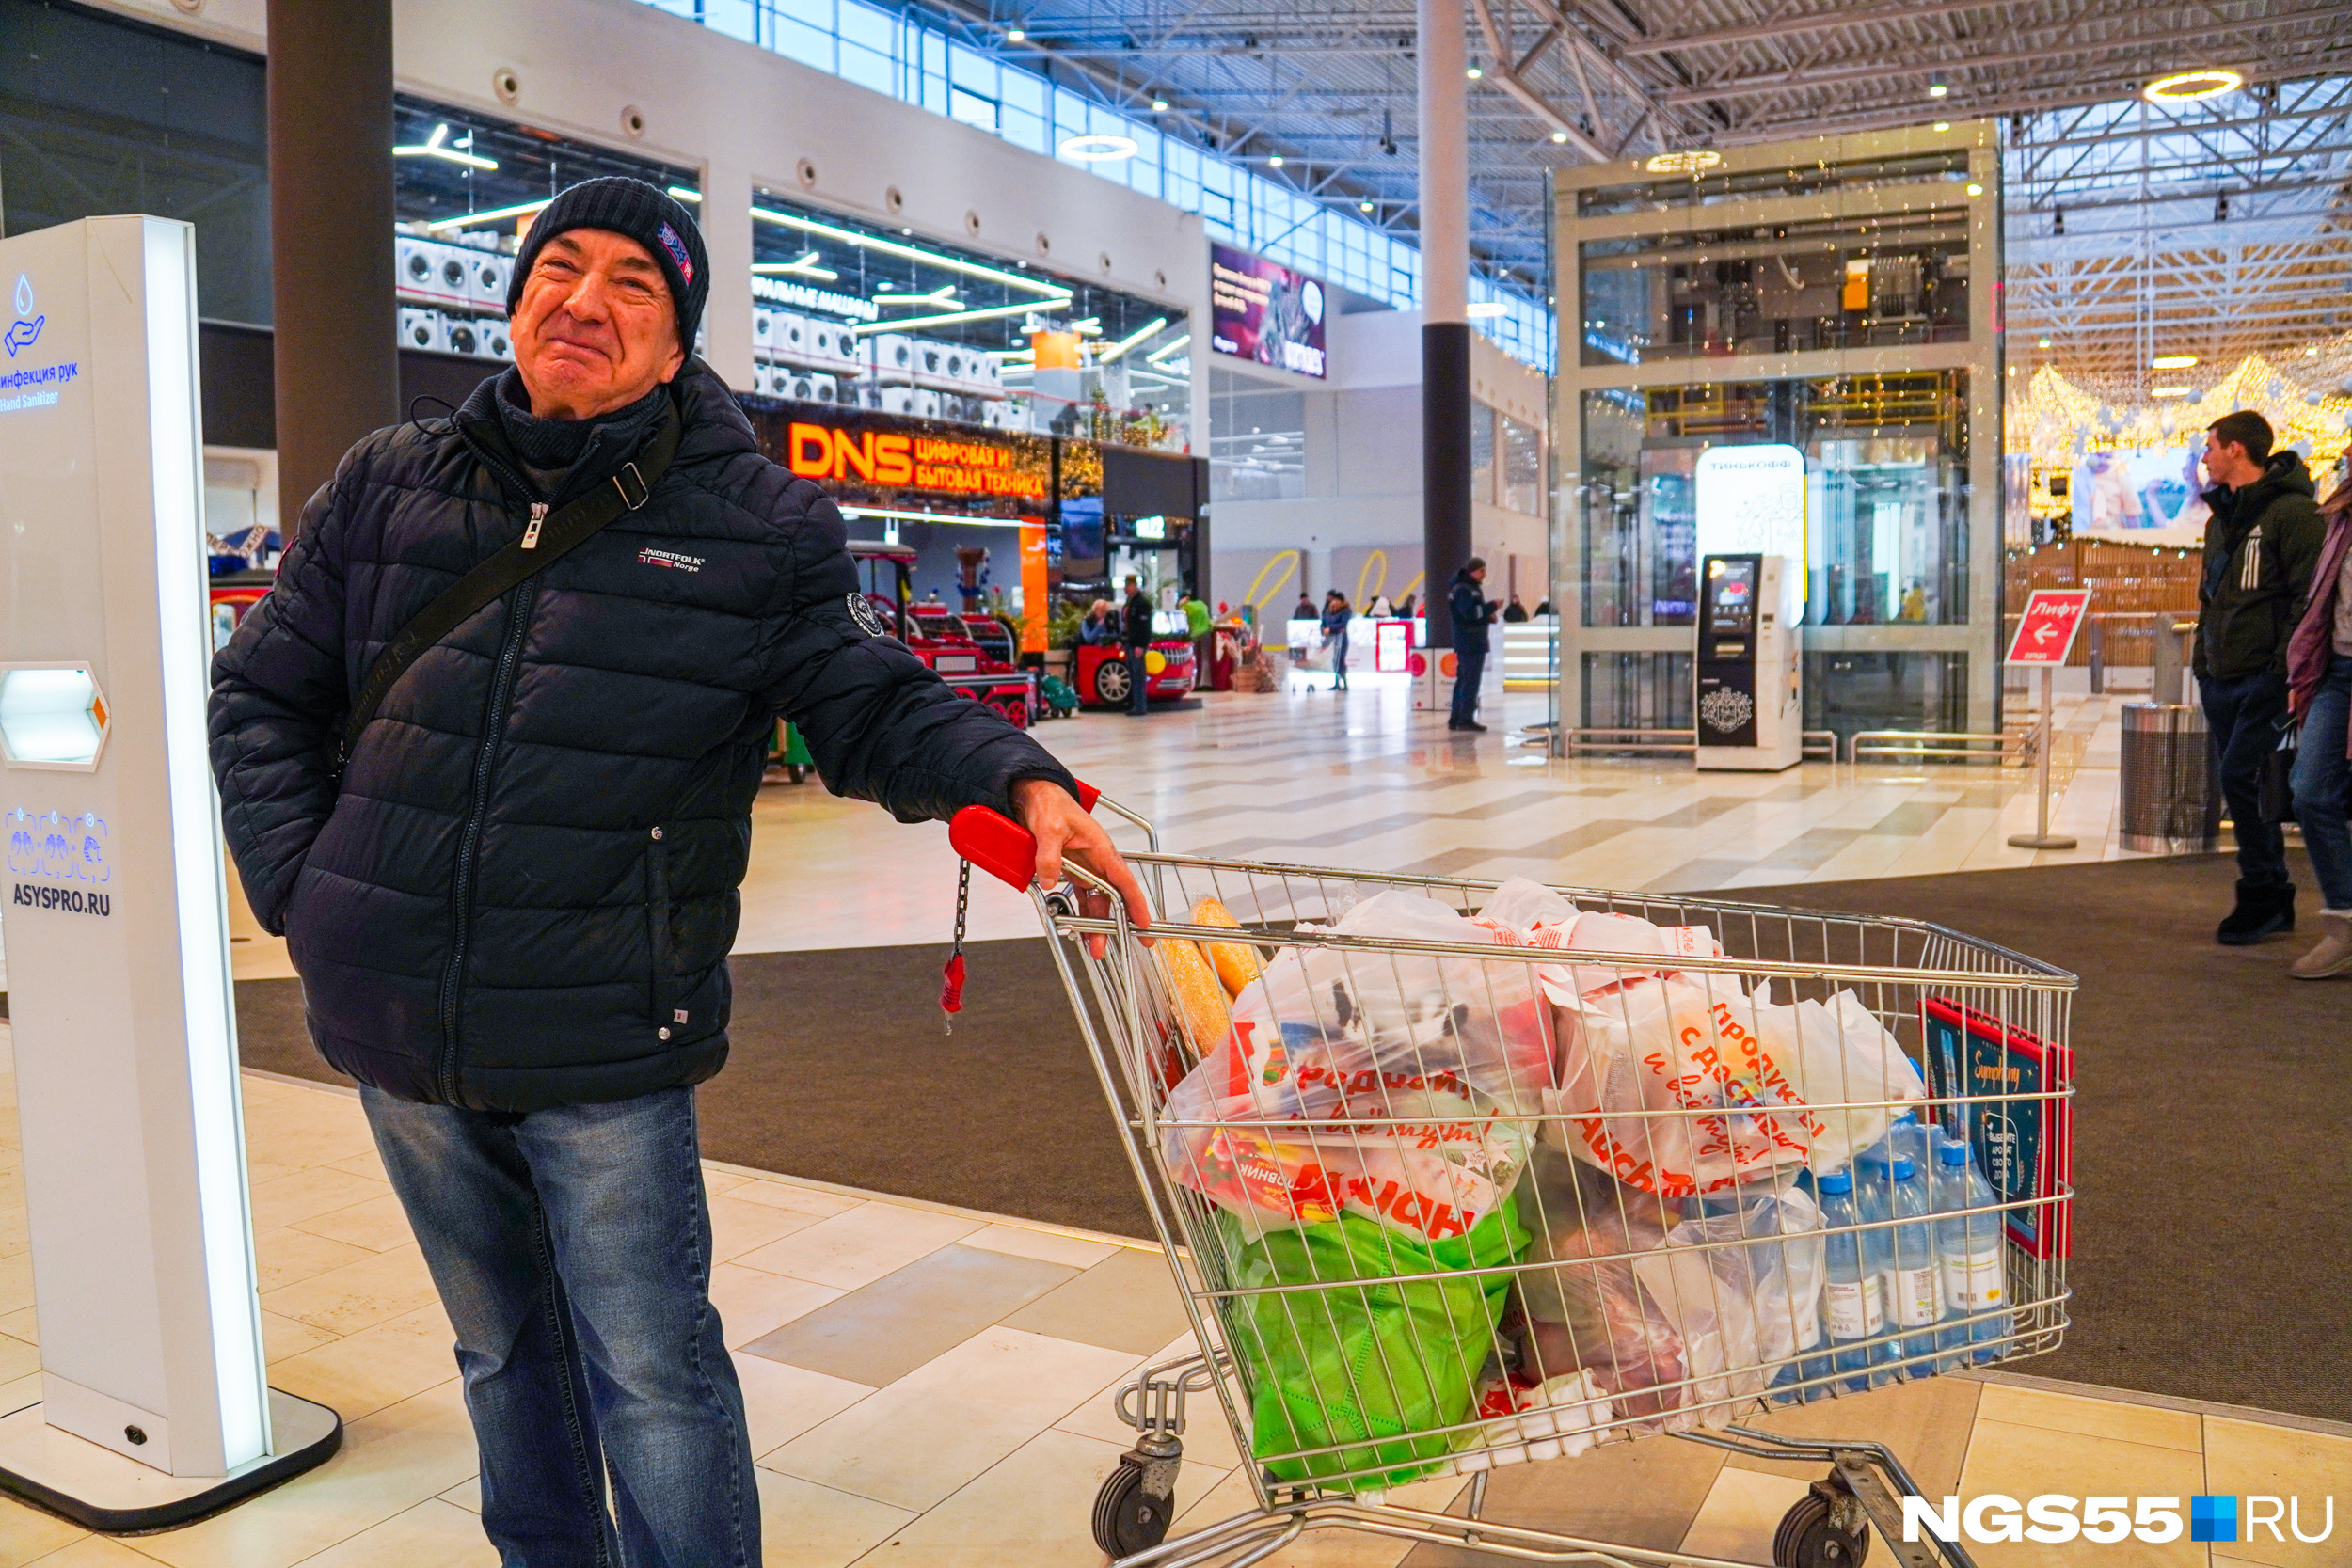 Владимир гуляет по гипермаркету с раннего утра